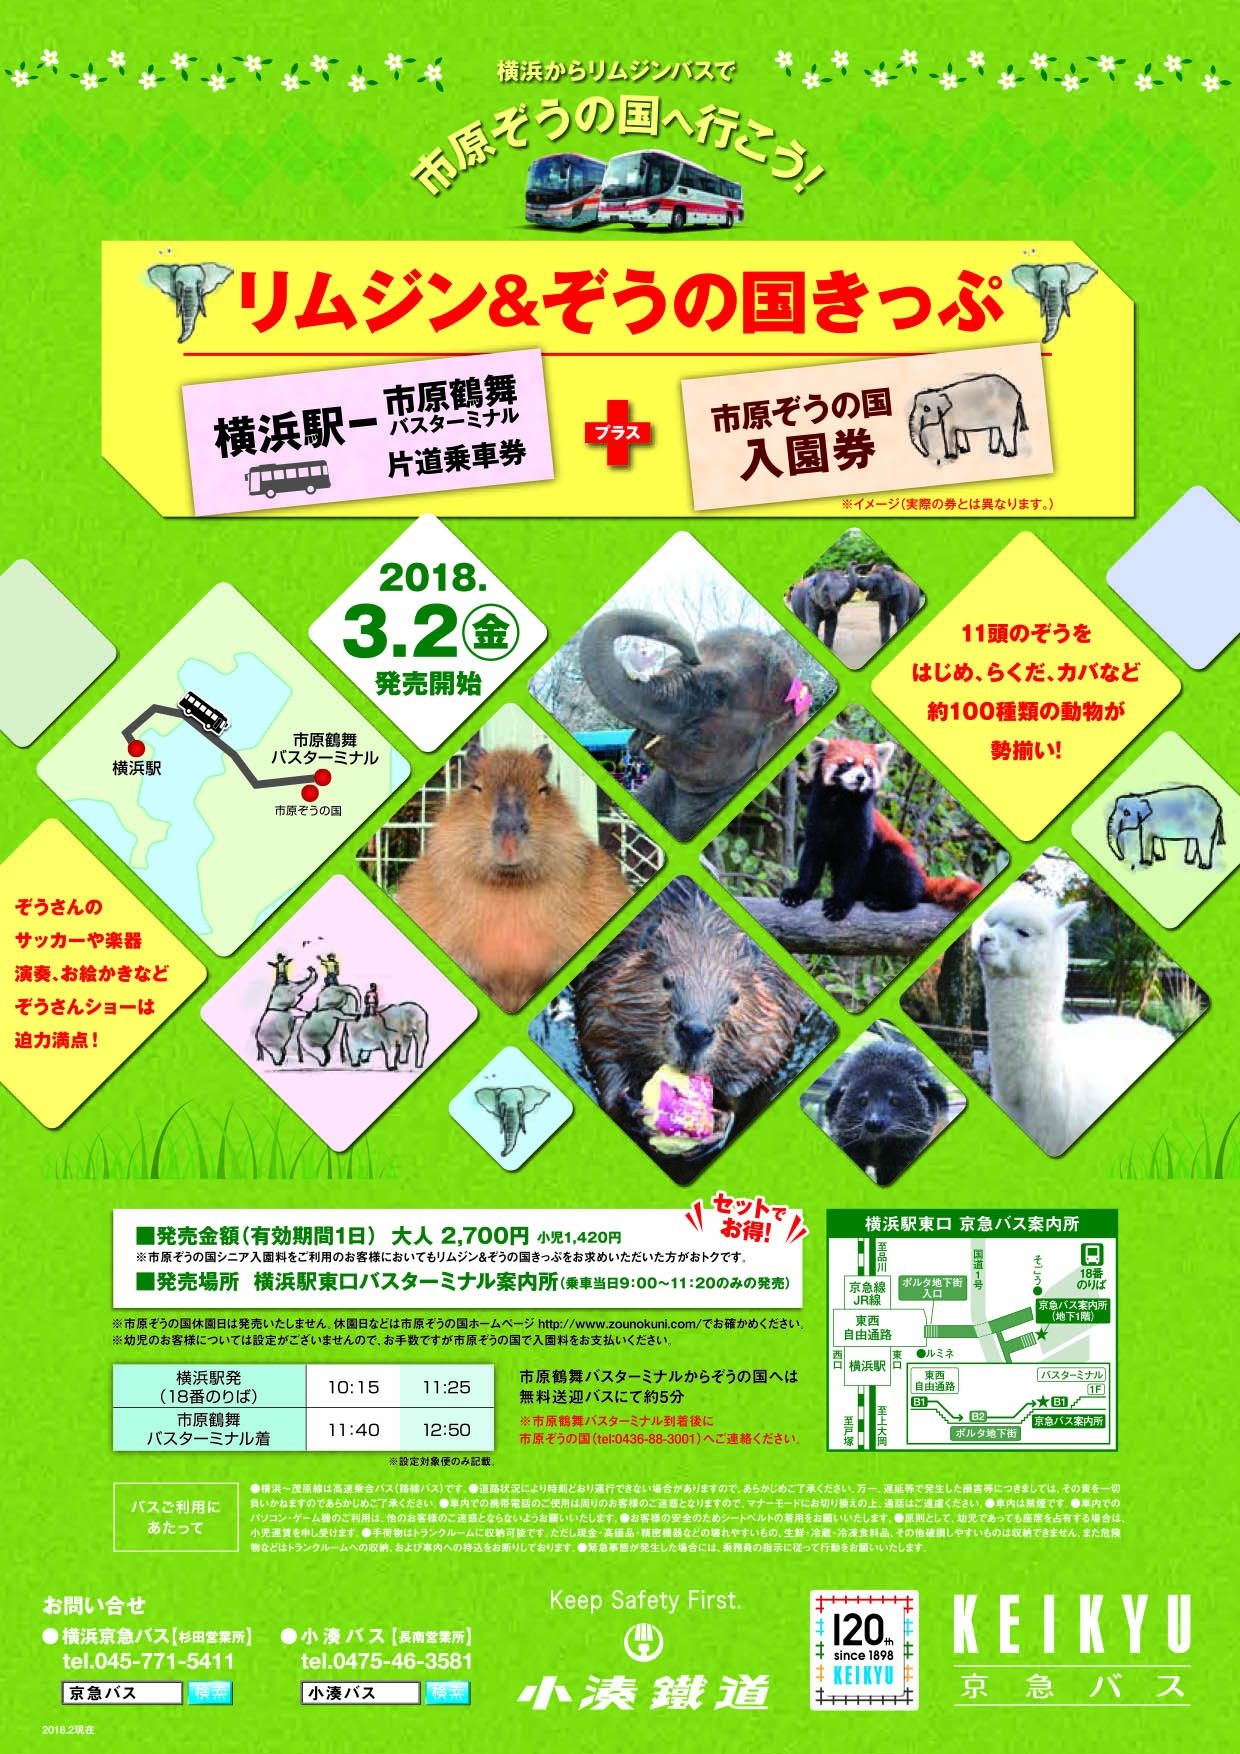 横浜から高速バスに乗って遊びに行こう リムジン ぞうの国きっぷ 発売 小湊鐵道株式会社のプレスリリース